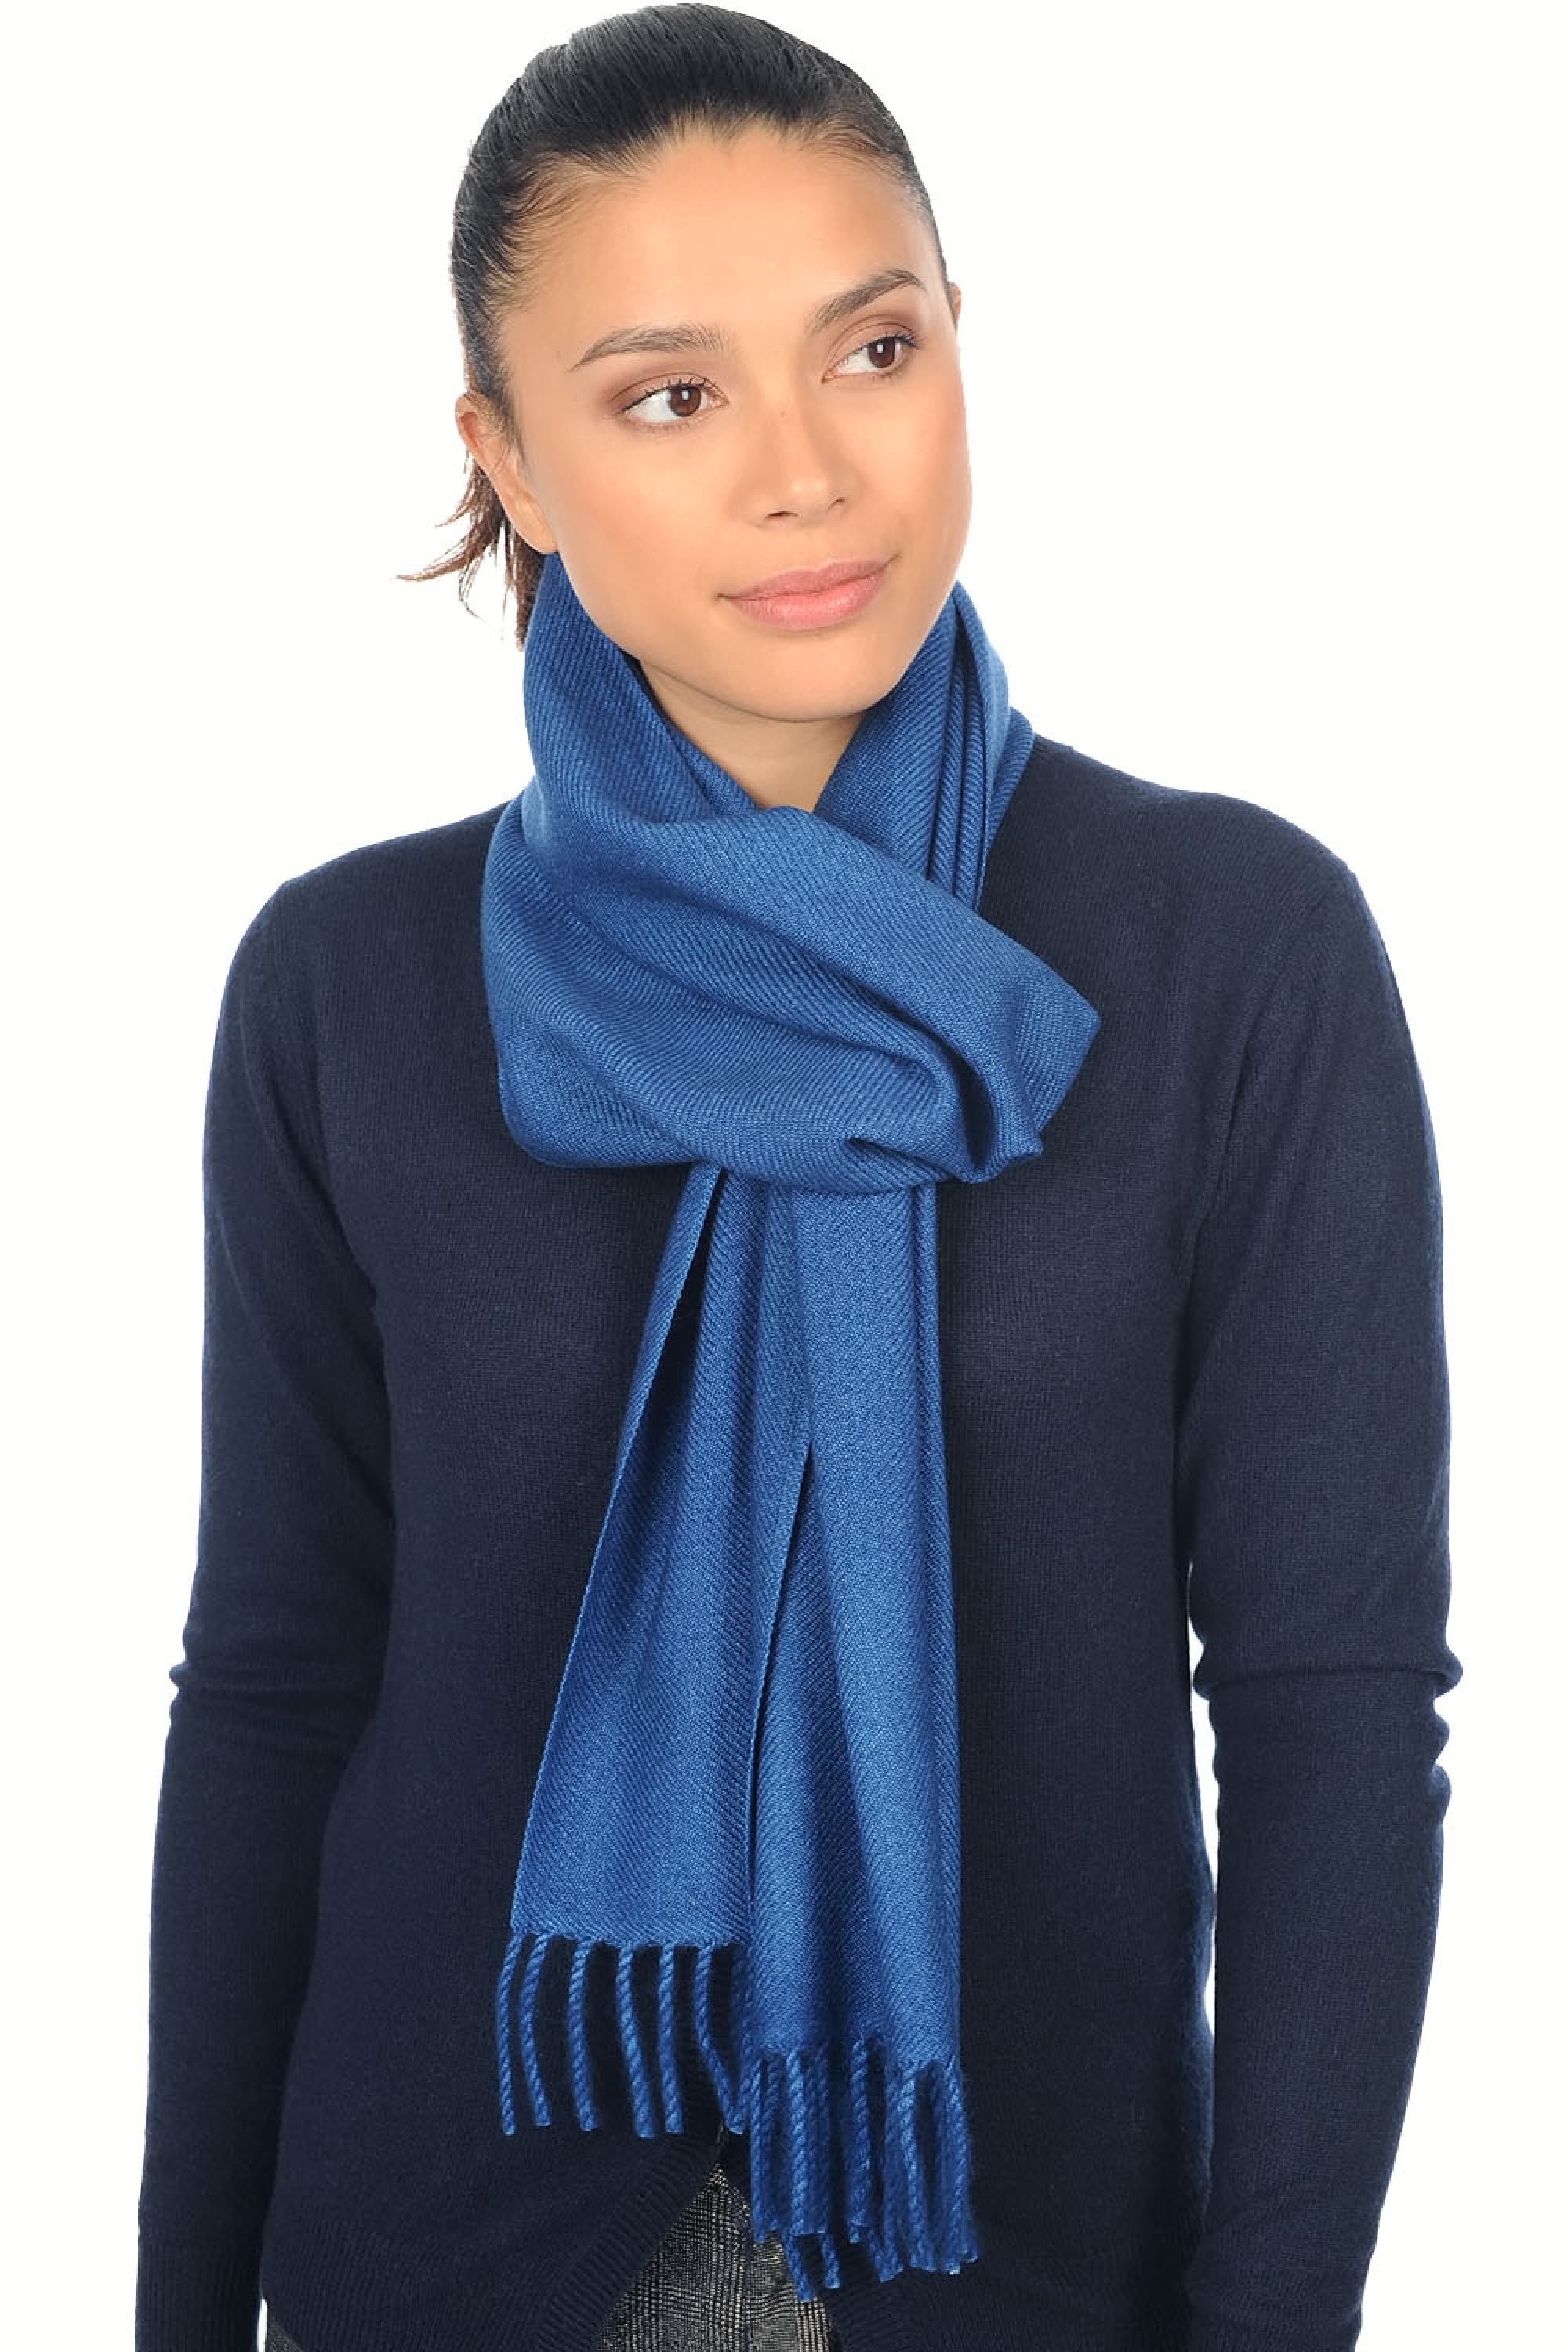 Cashmere ladies scarves mufflers kazu200 dark blue 200 x 35 cm